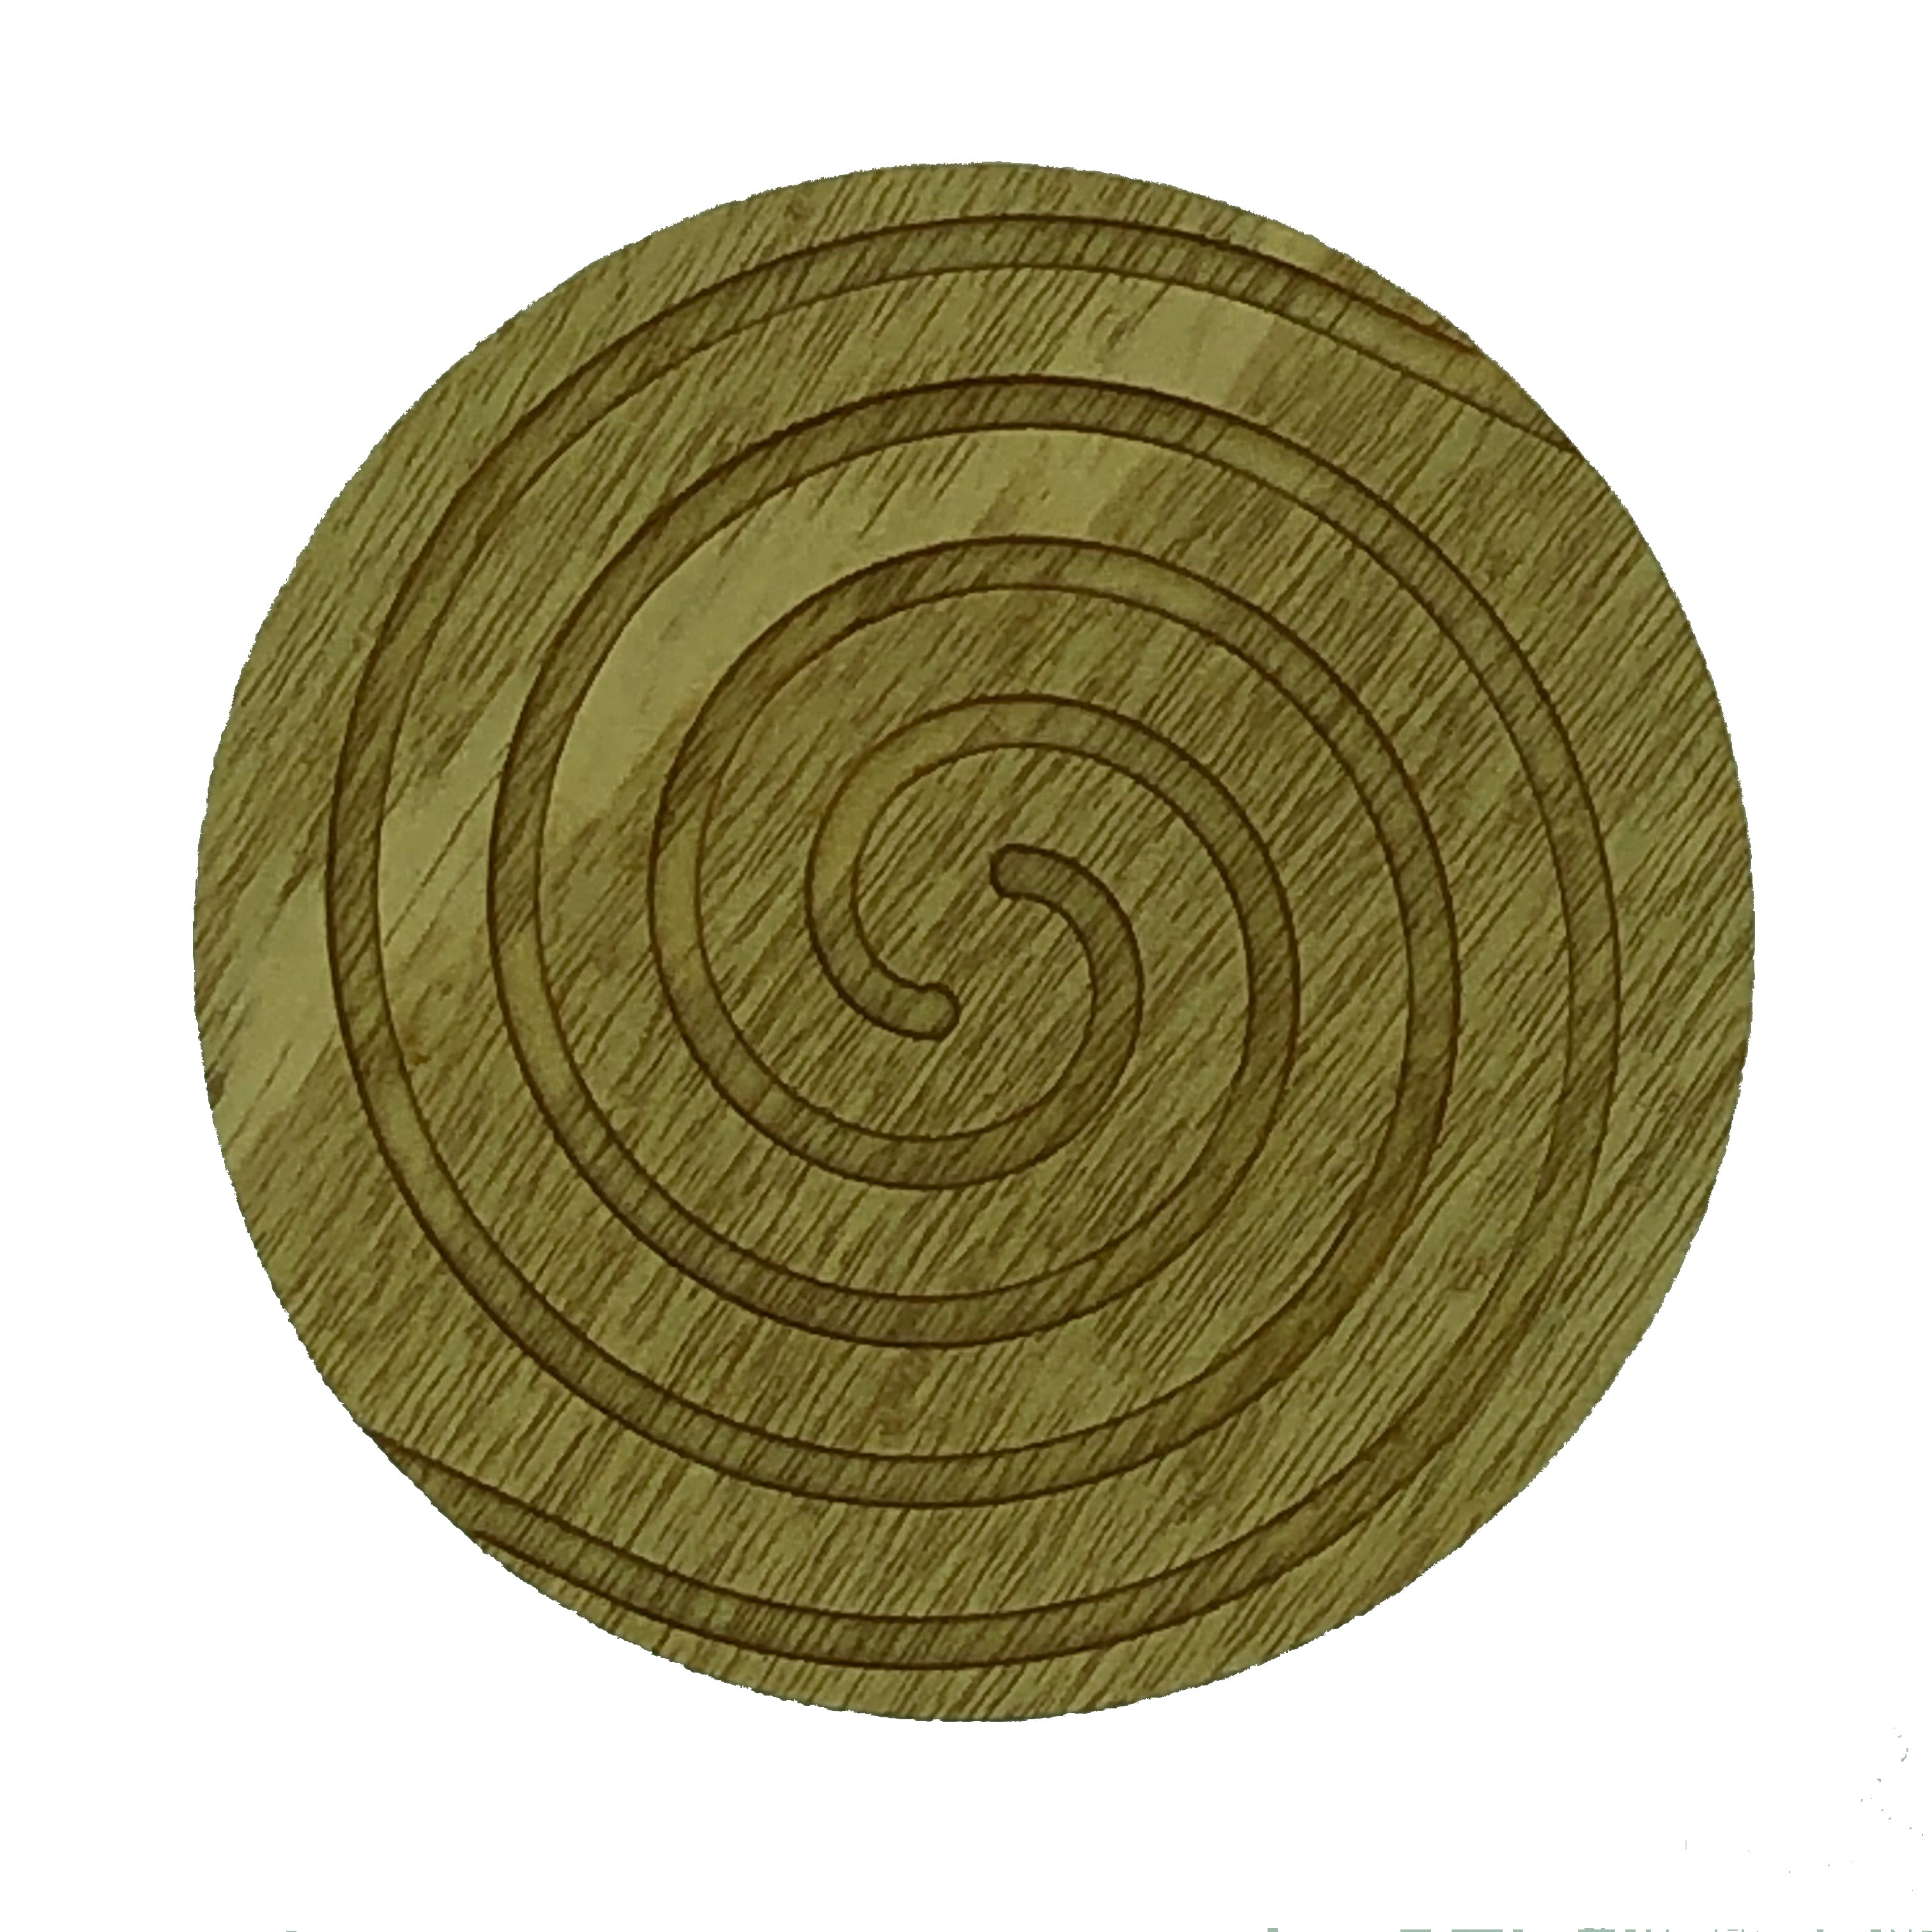 Coasters - spiral, idigbo